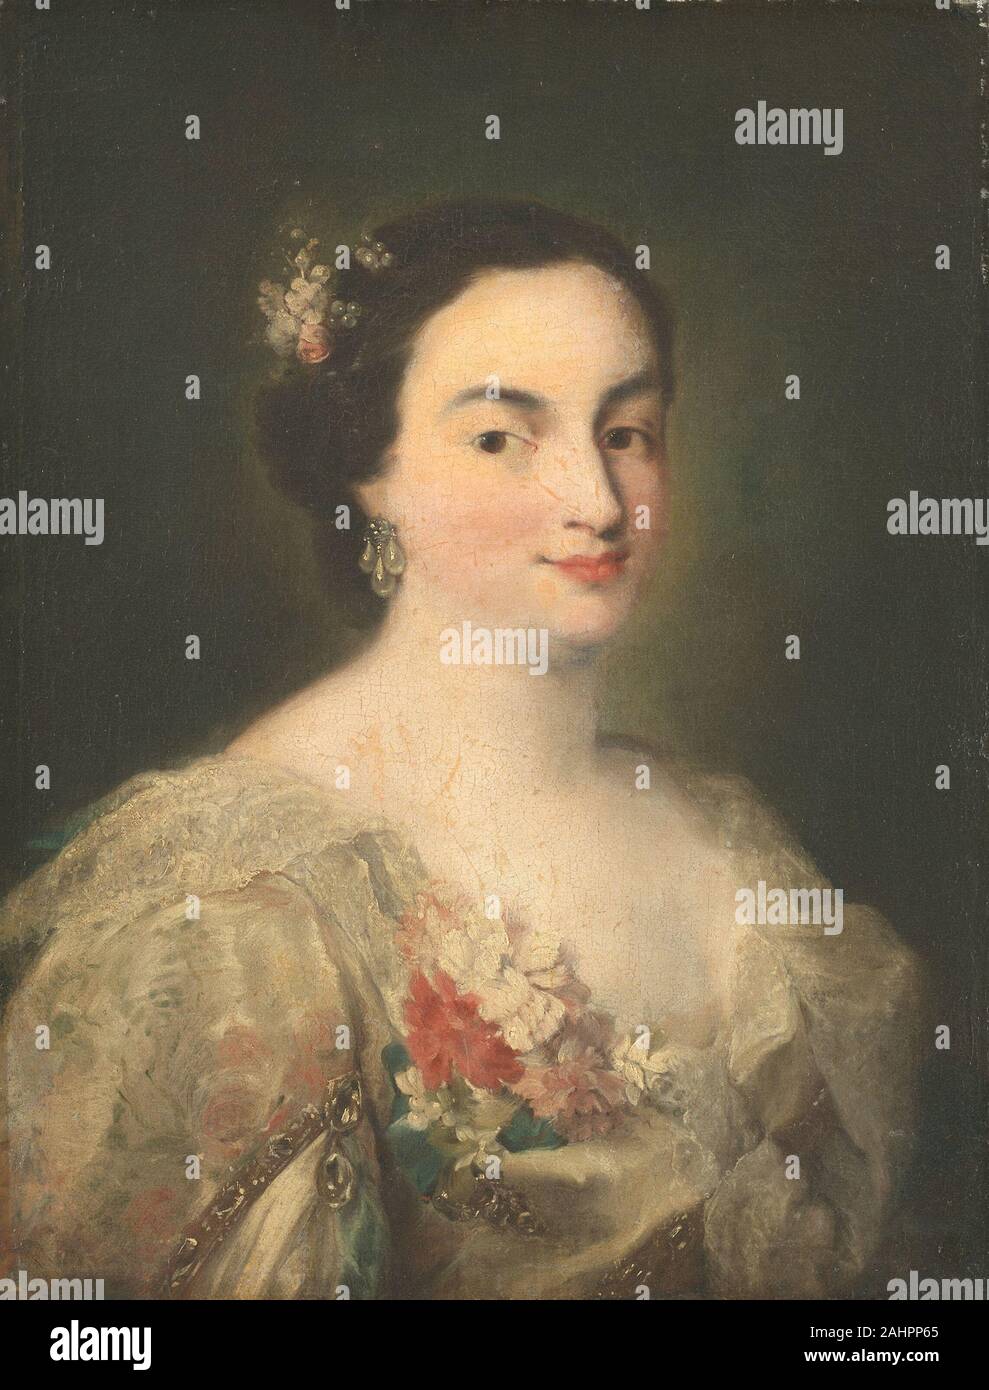 Alessandro Longhi. Portrait d'une jeune femme. 1750-1770. L'Italie. Huile sur toile Banque D'Images